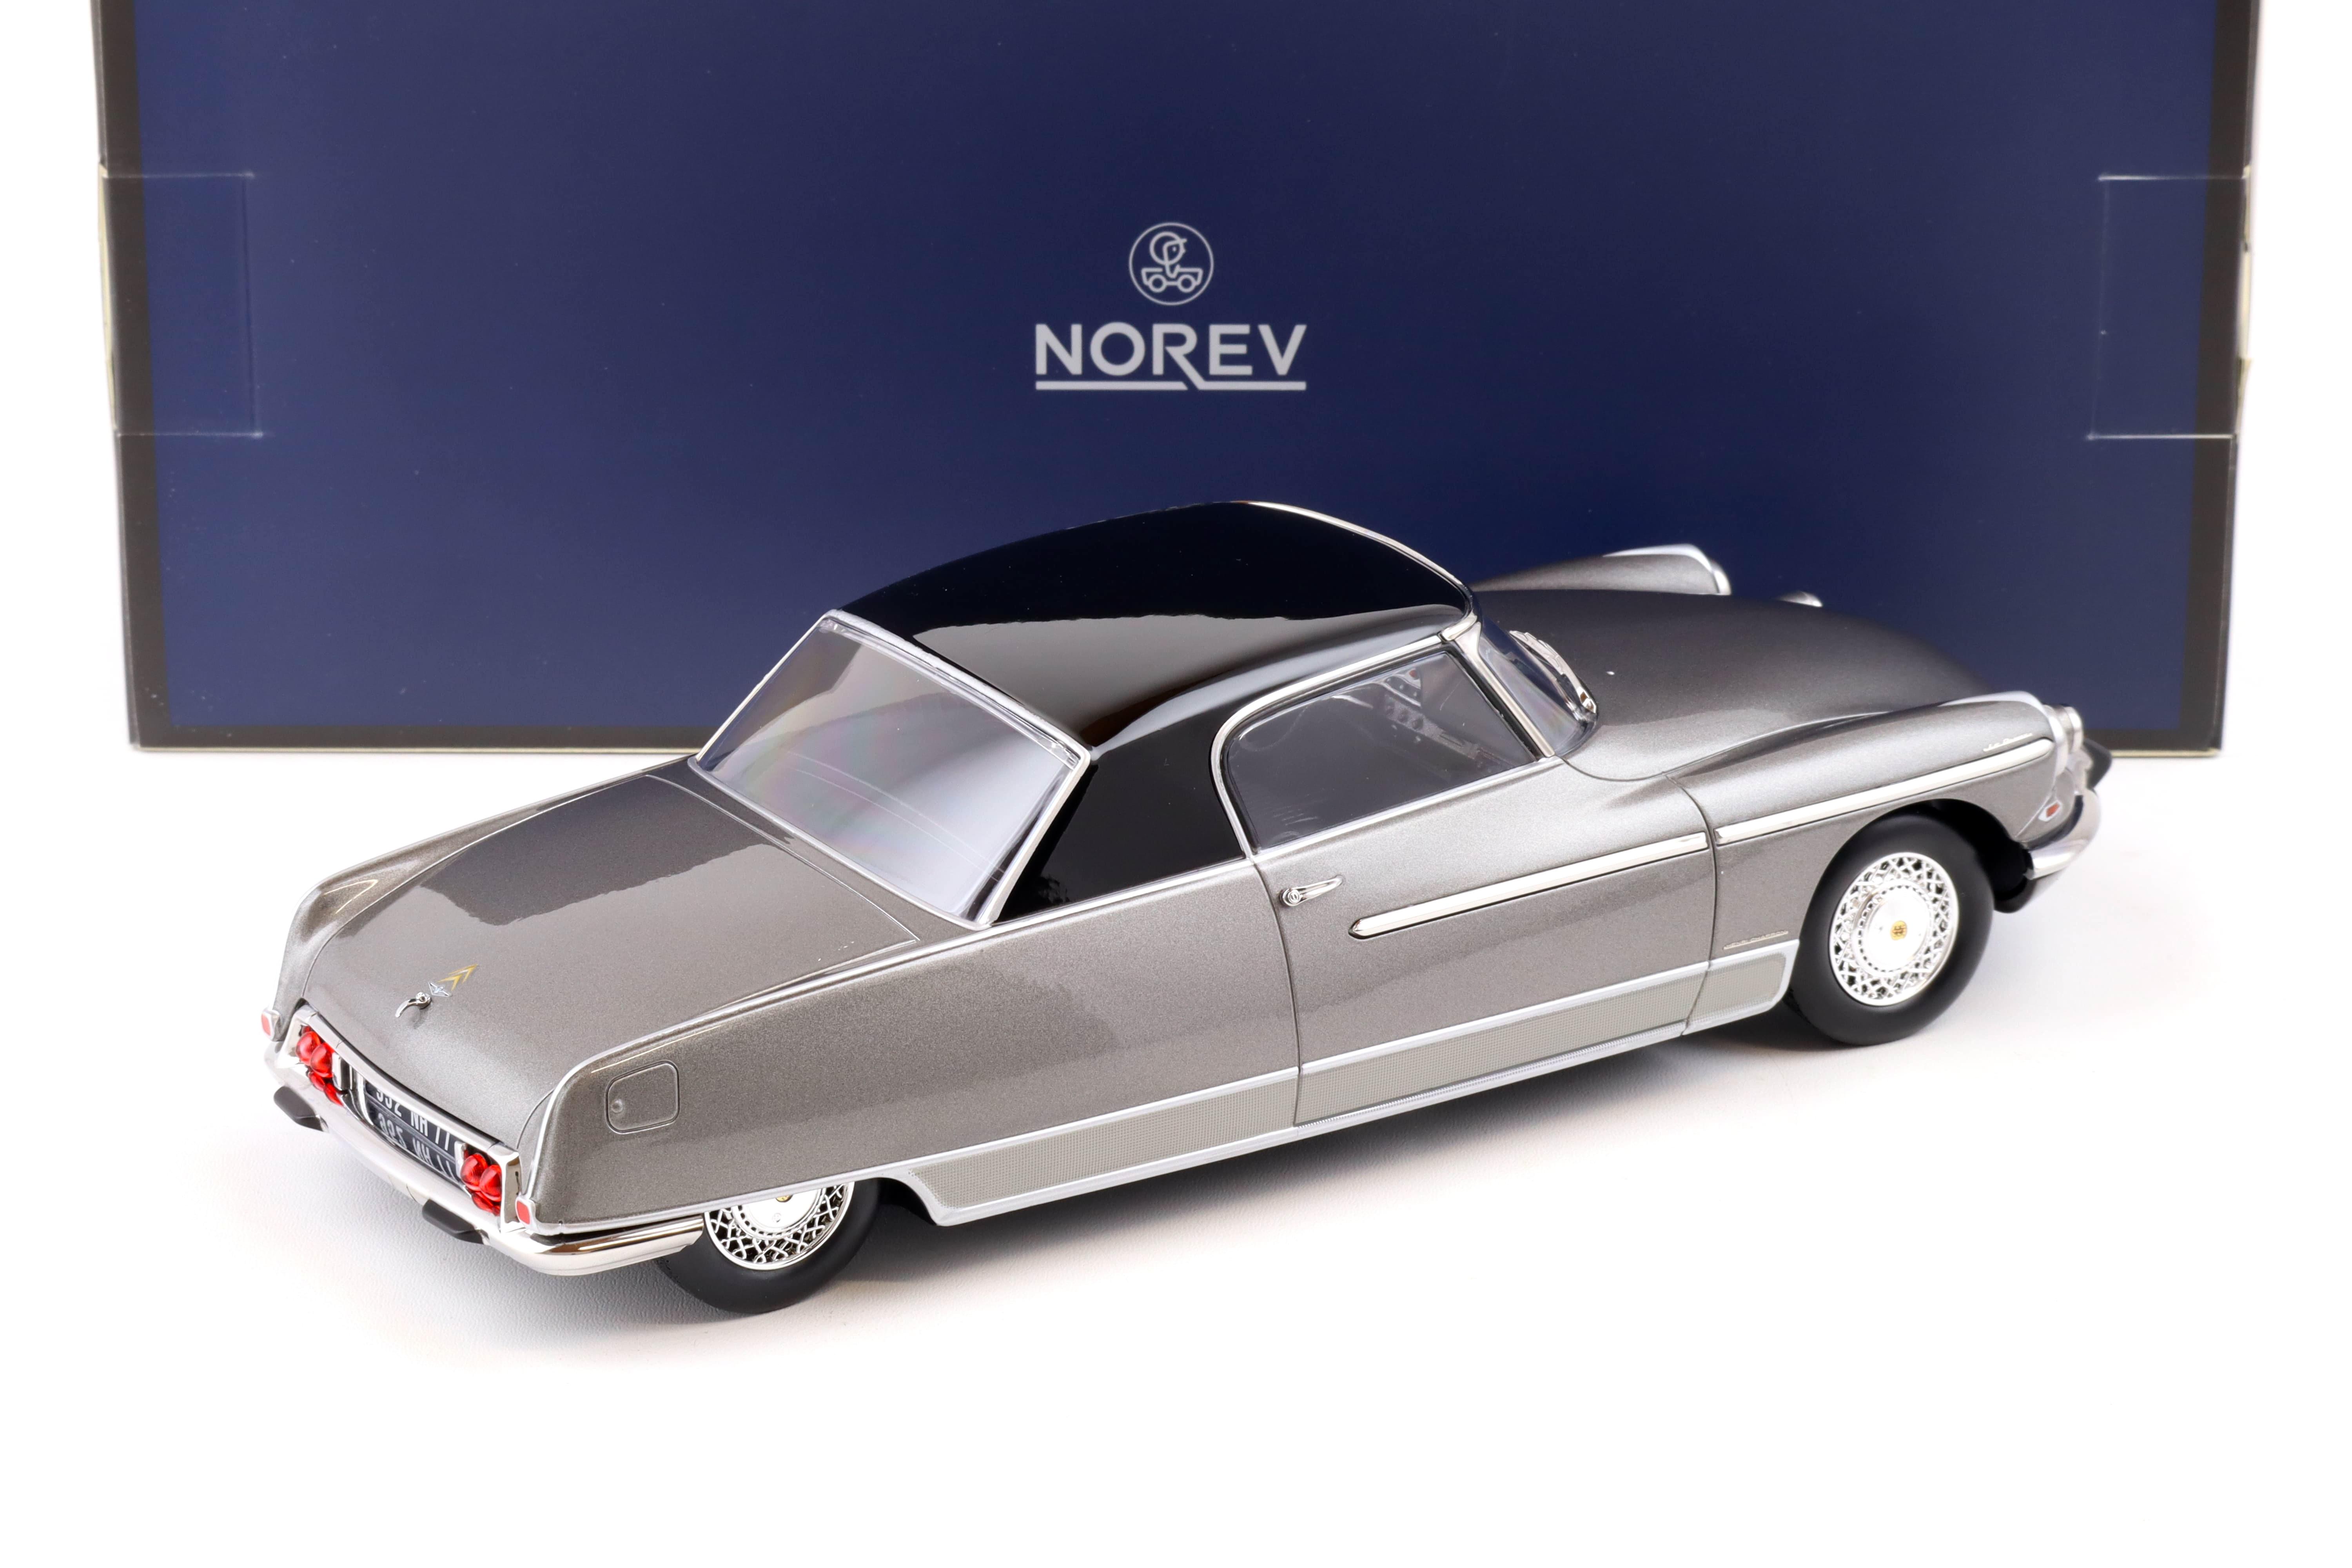 1:18 Norev Citroen DS 19 Le Dandy 1964 grey & black - Limited 300 pcs.